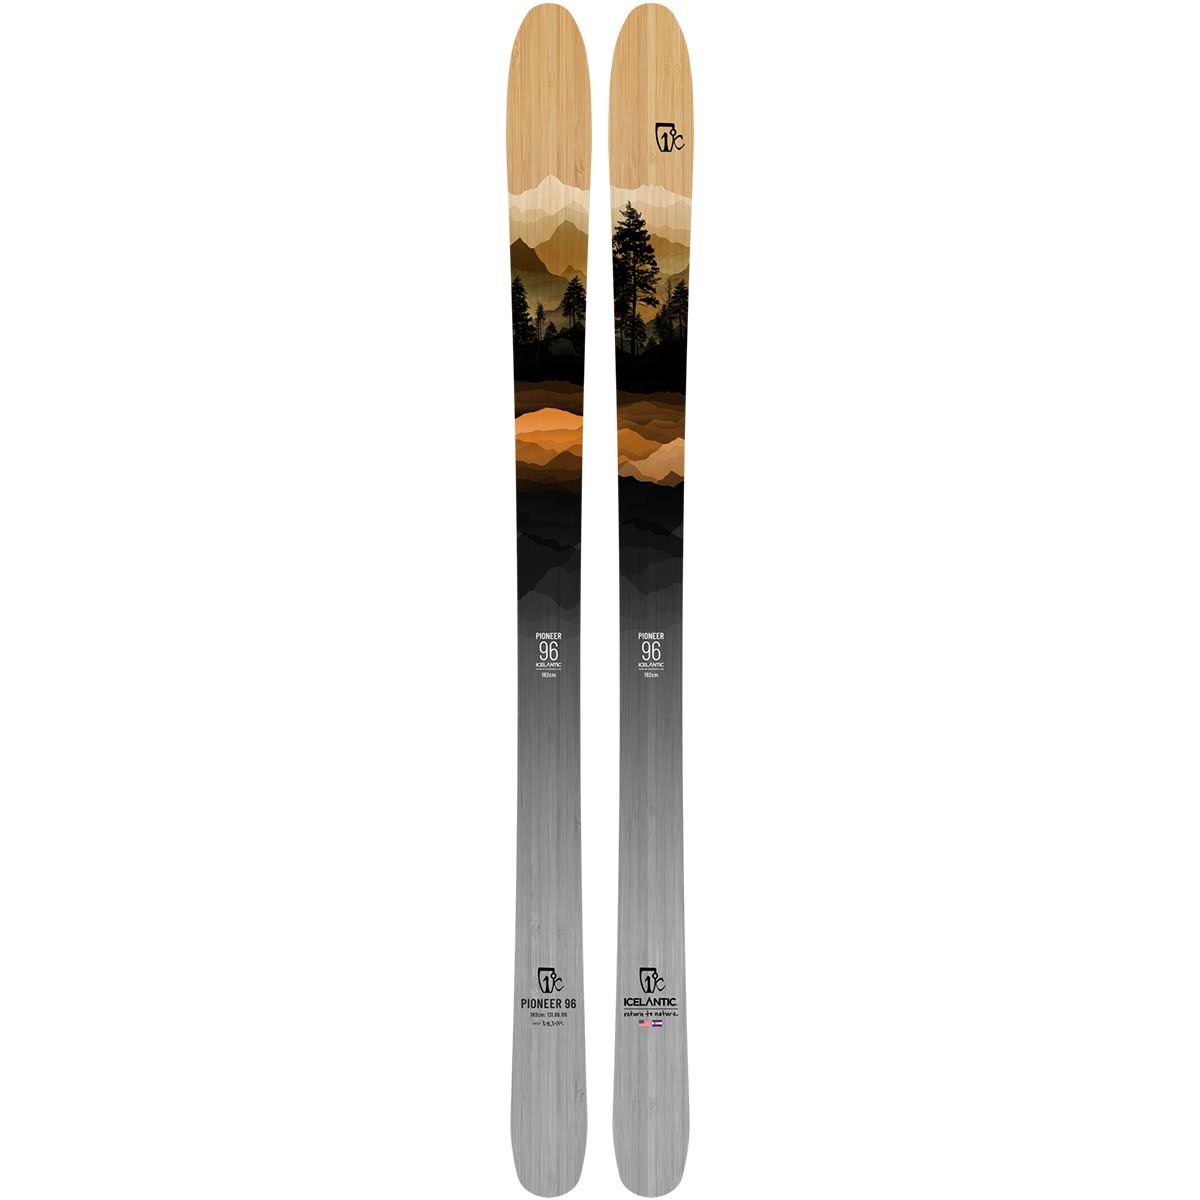 Icelantic Pioneer 96 Skis 2022 174 cm